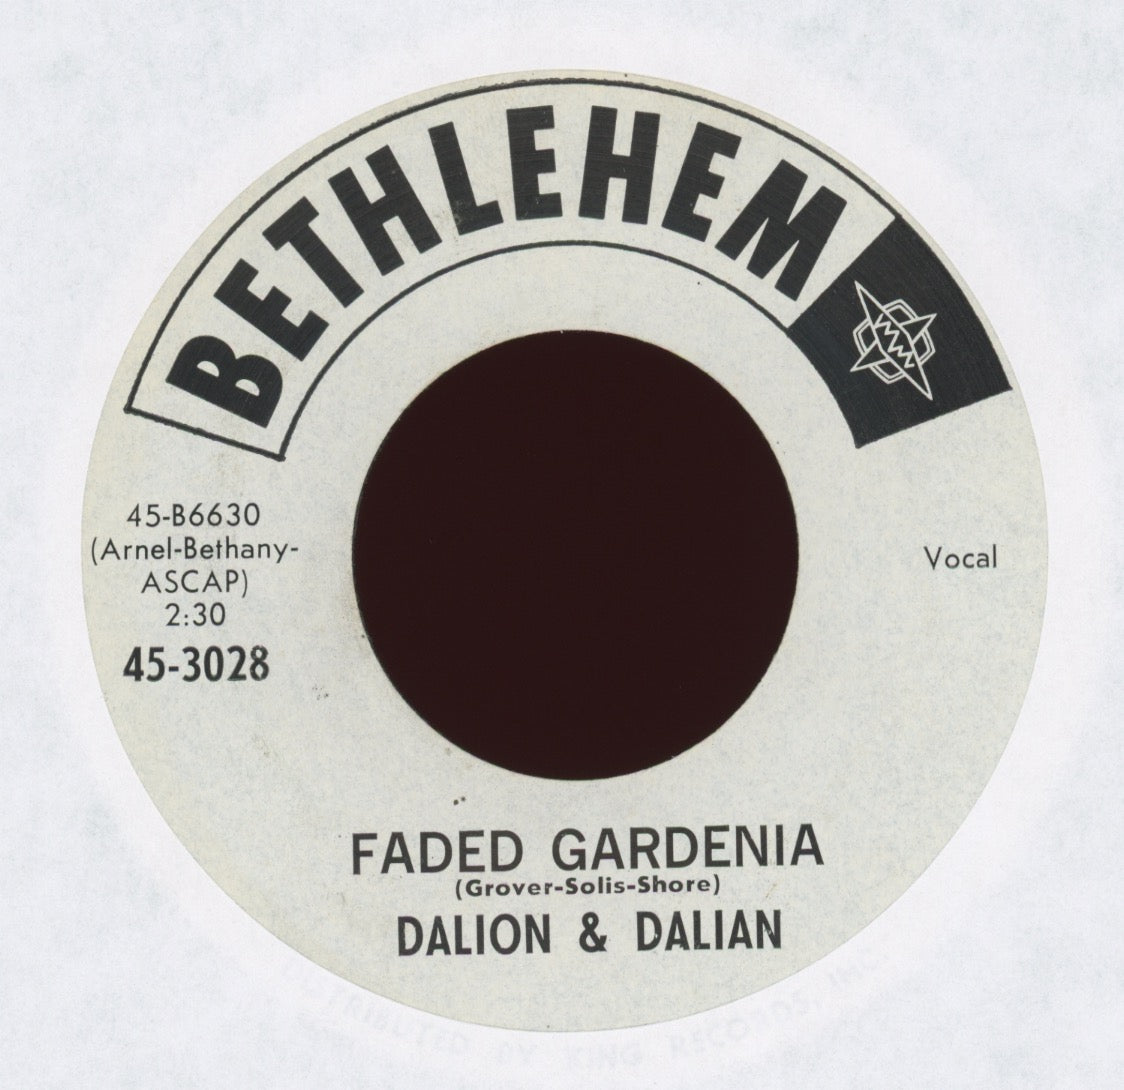 Dalion & Dalian - Faded Gardenia on Bethlehem Promo